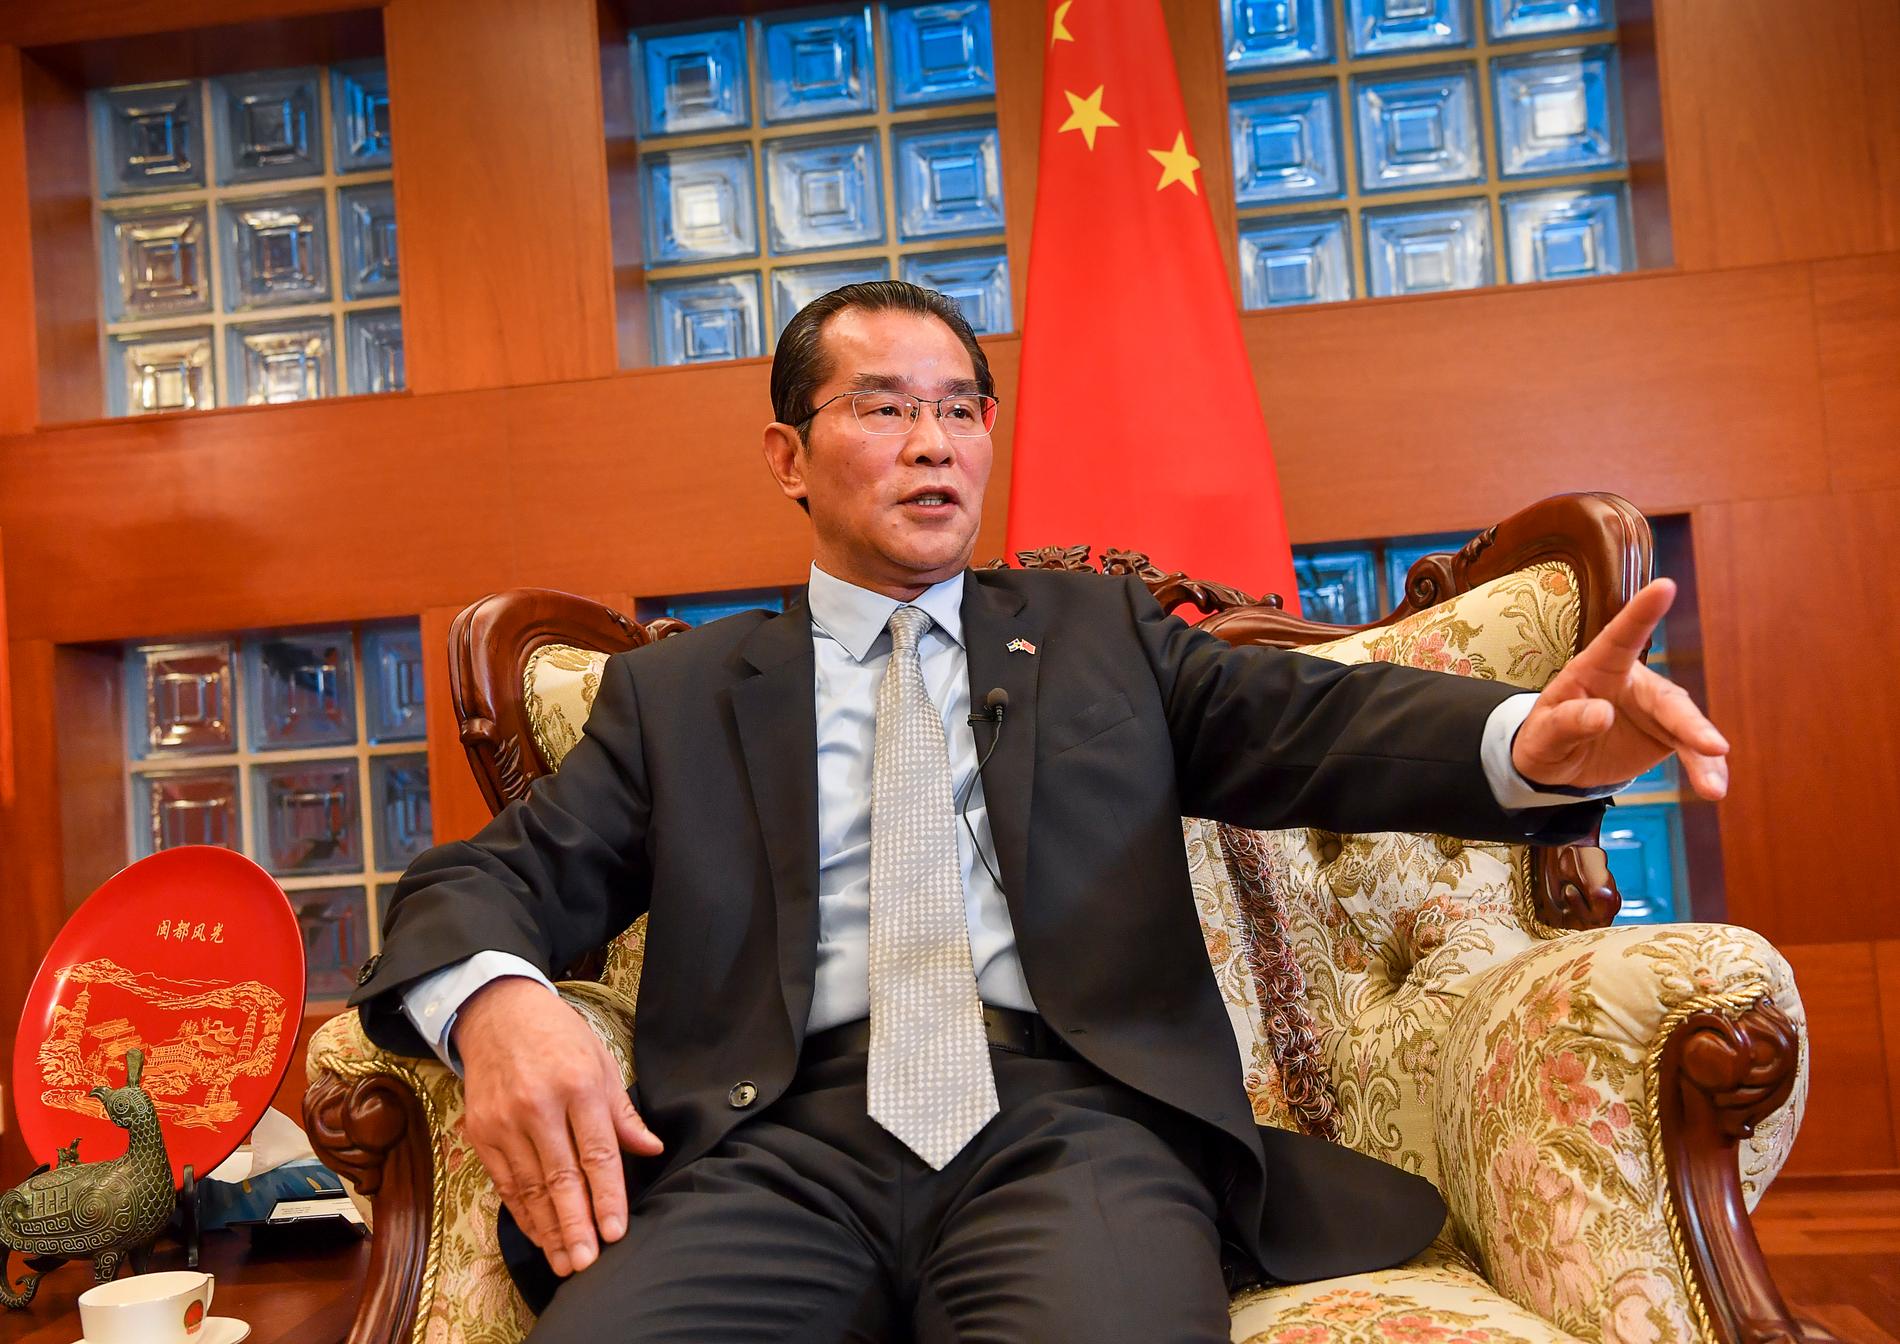 Kinas ambassadör Gui Congyou varnar svenska regeringsföreträdare.